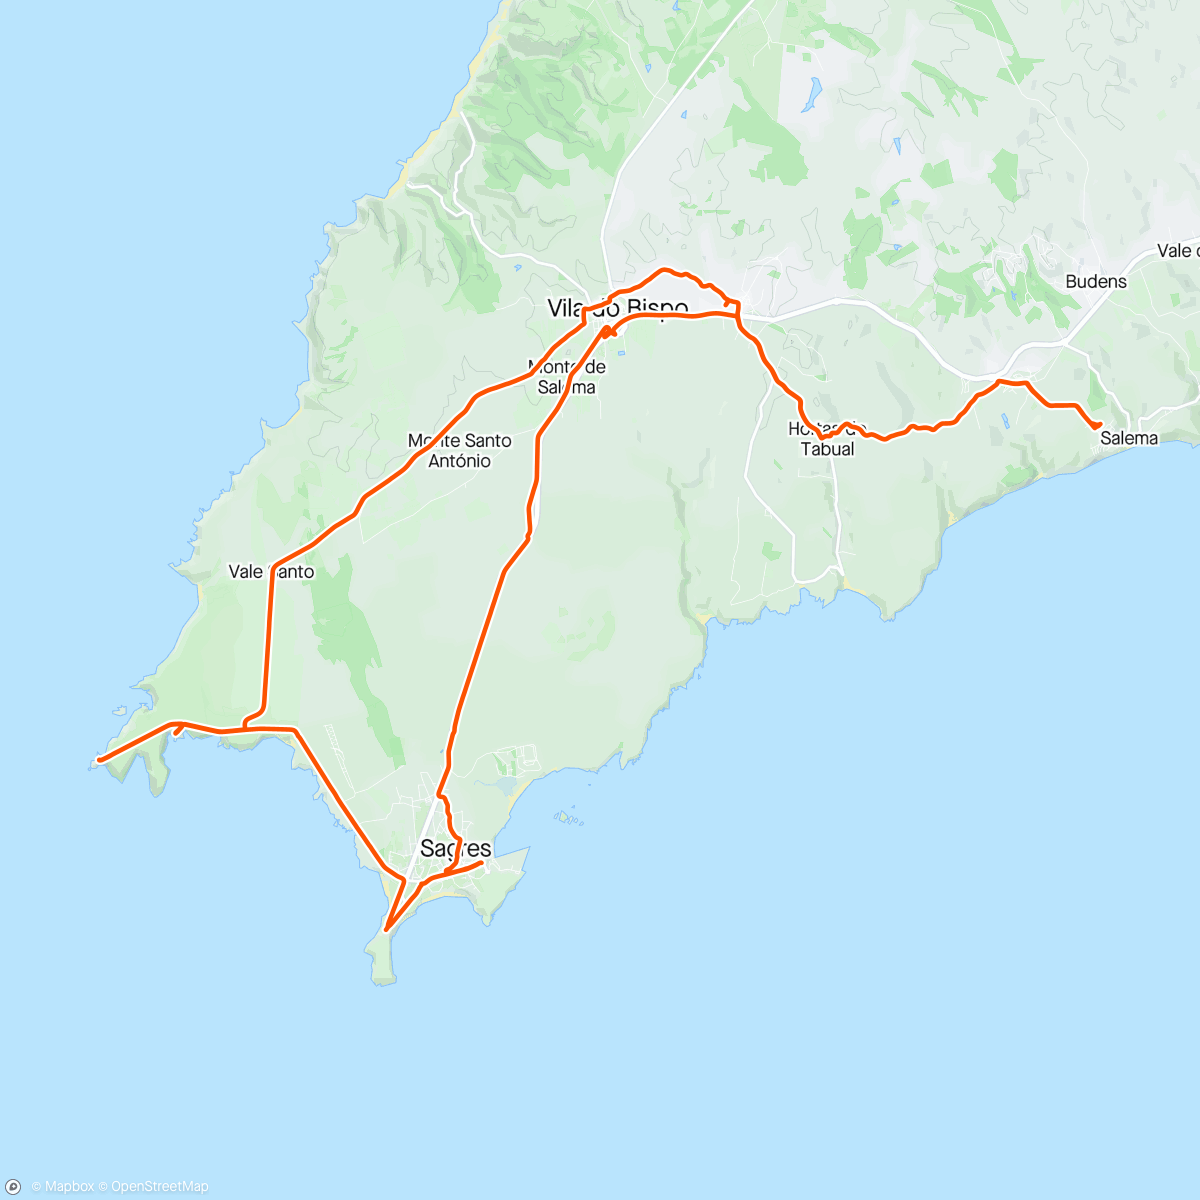 Mapa de la actividad (Salema, Sao Vicente and Sagres loop)